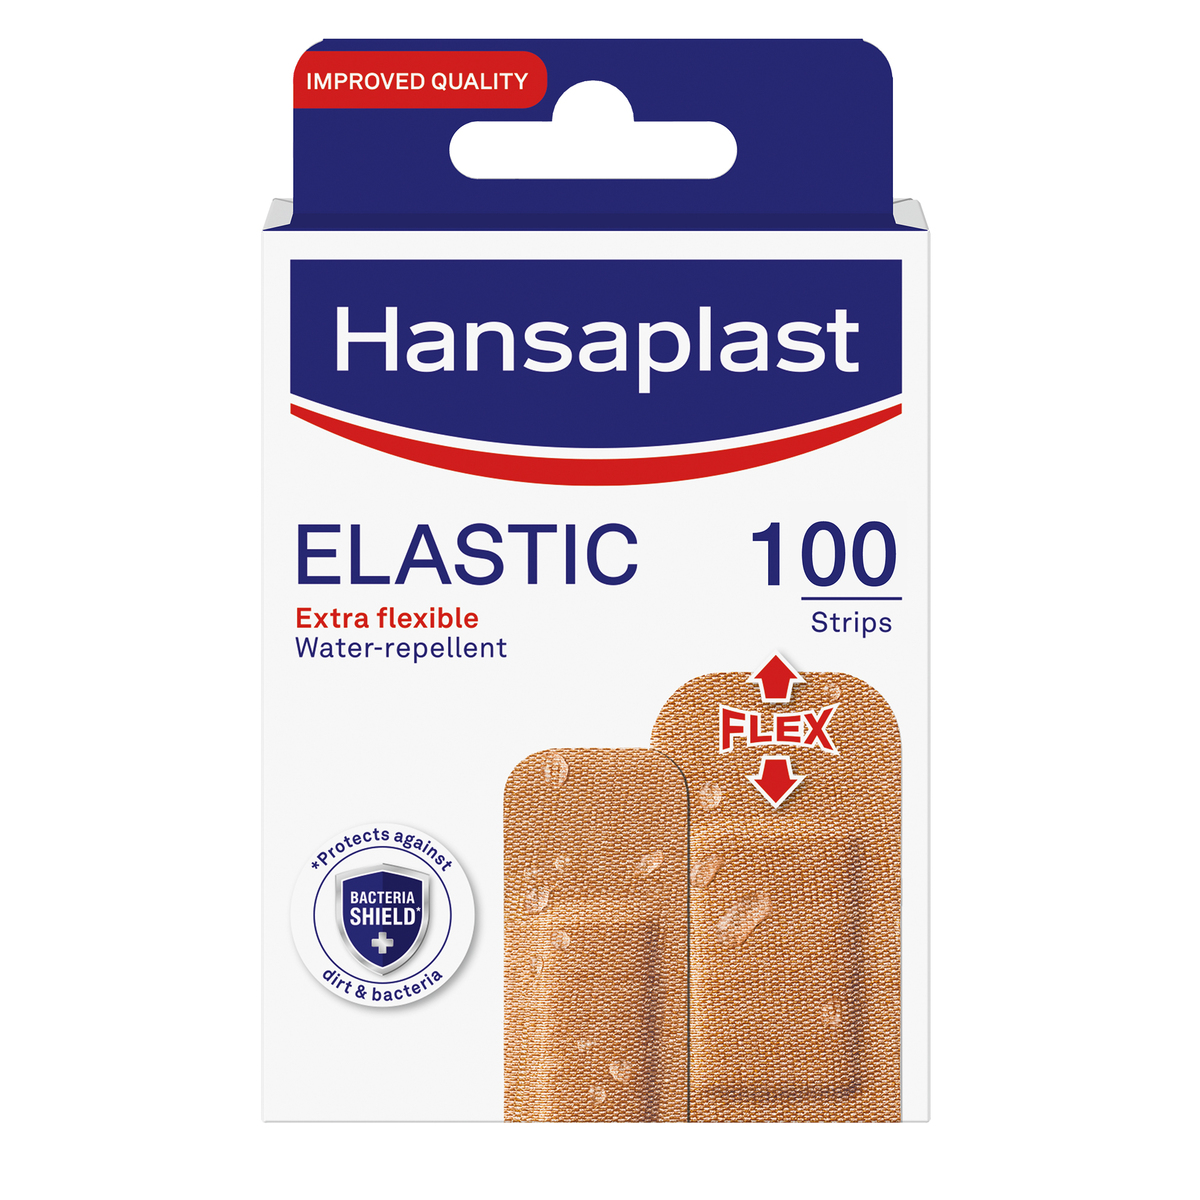 Hansaplast Elastic 100 pcs